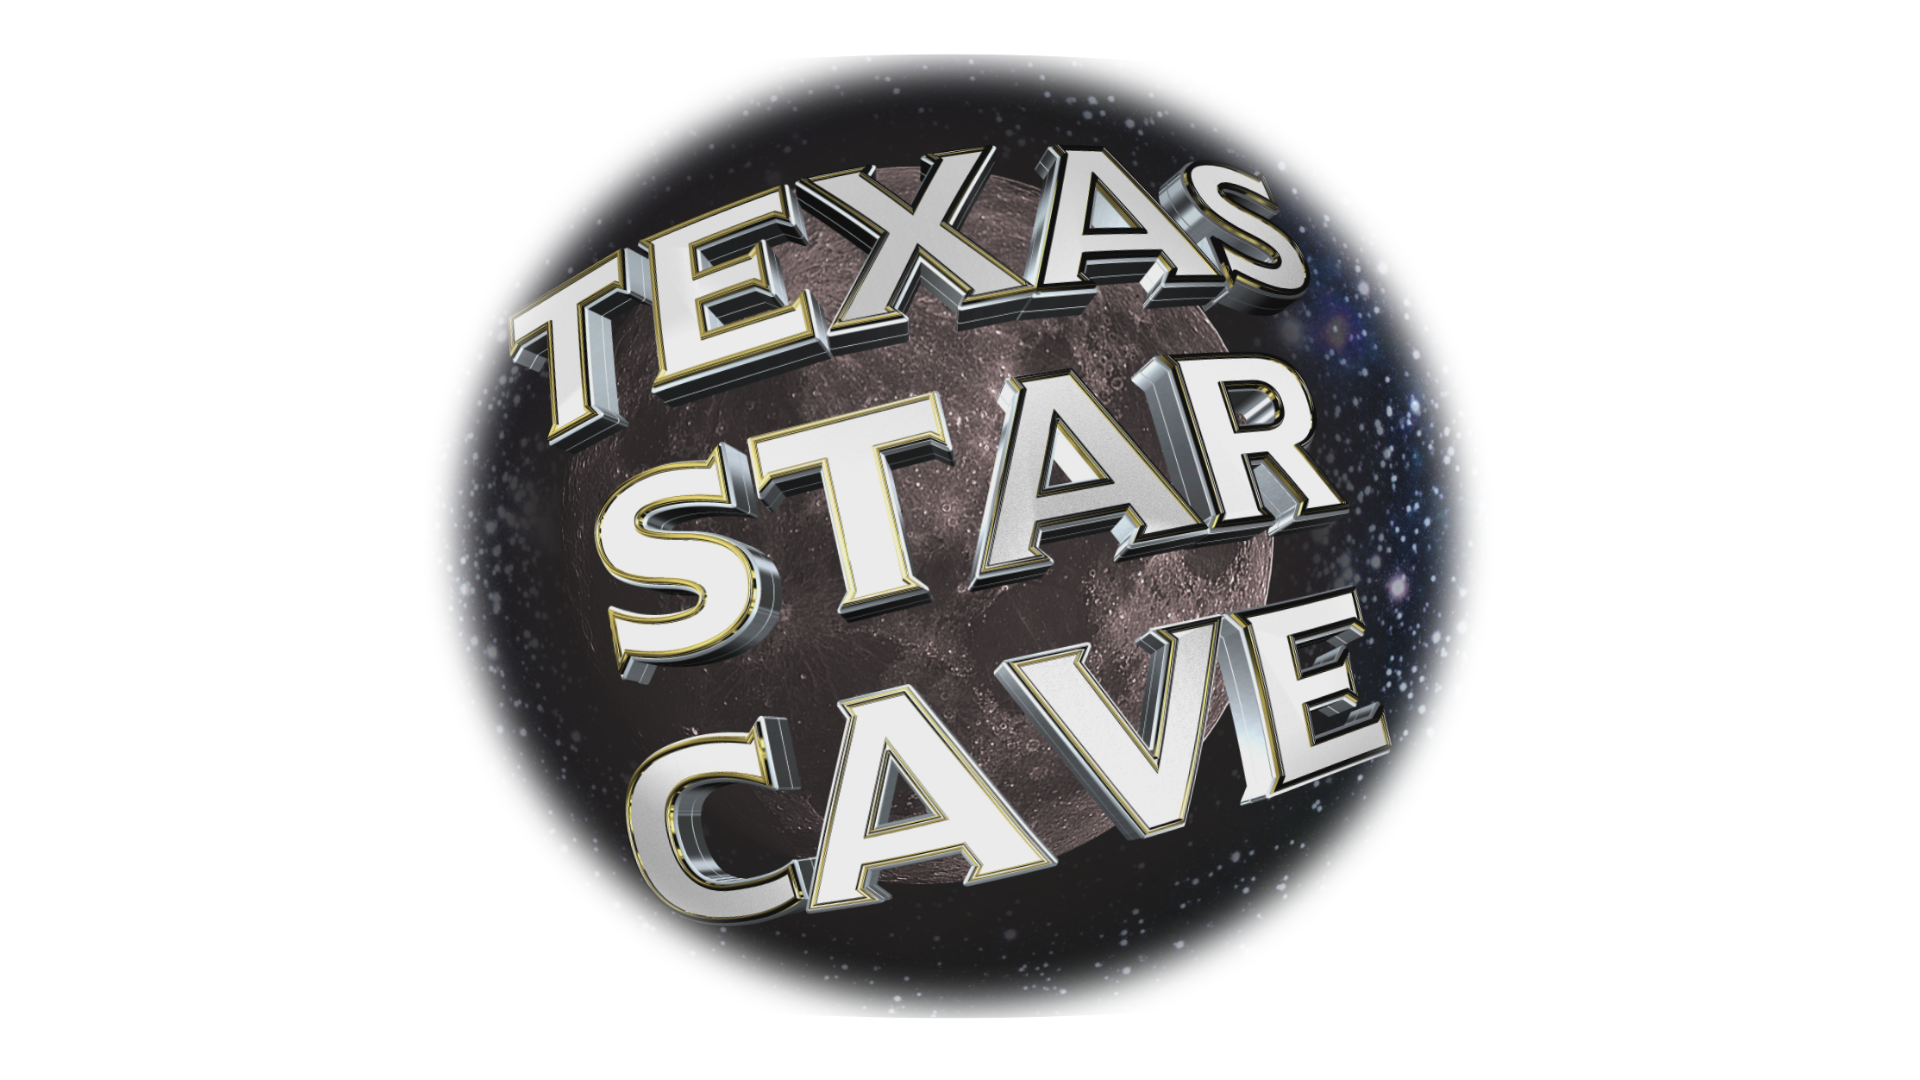 Texas Star Cave™